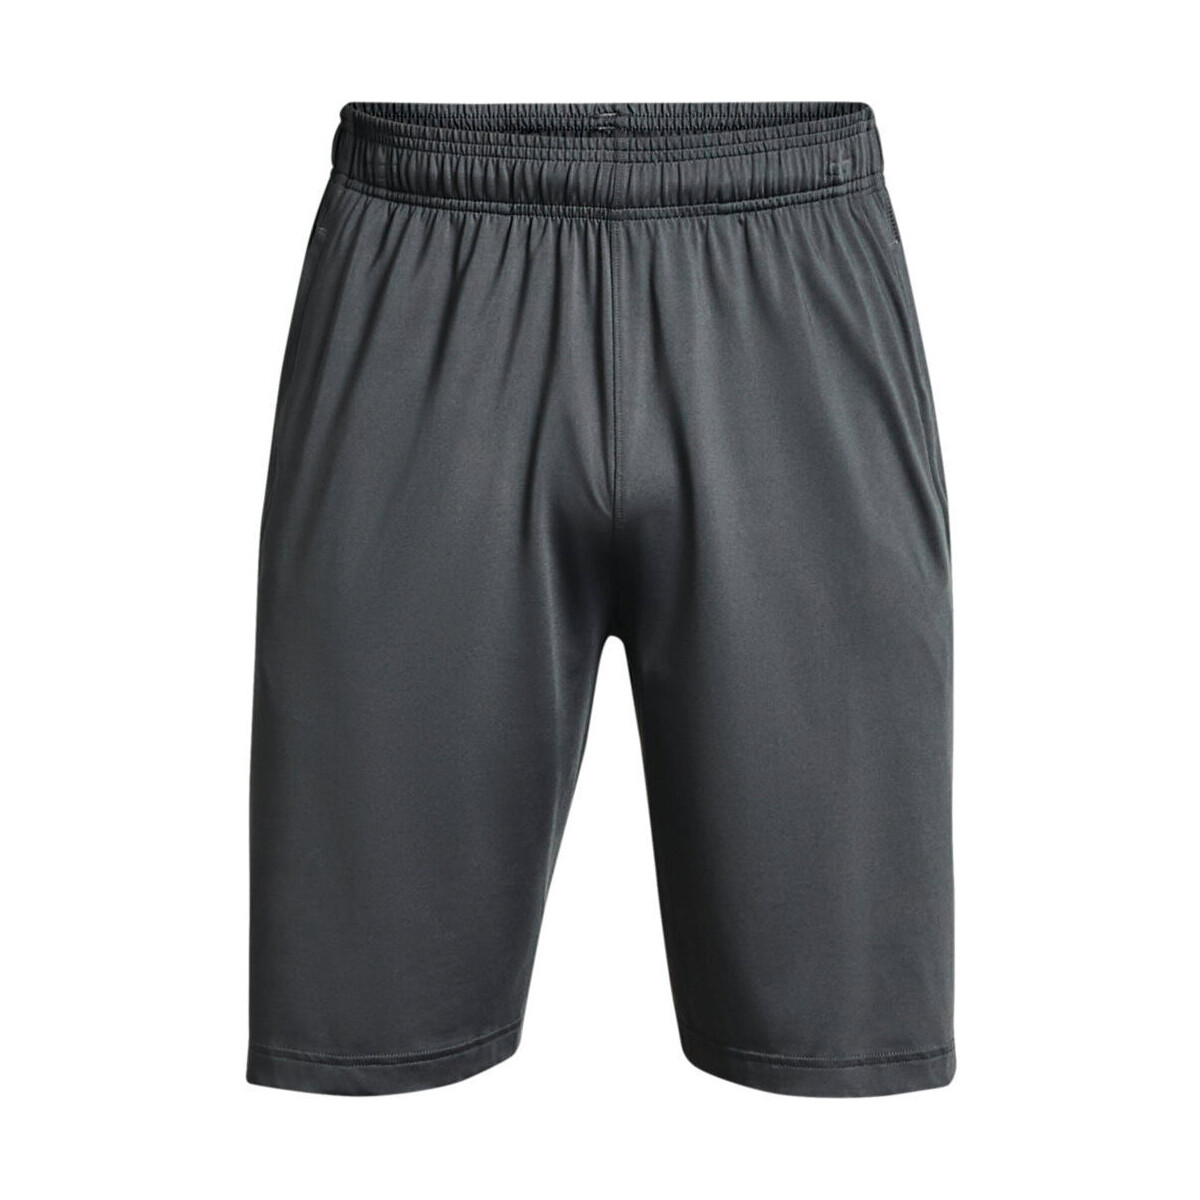 textil Hombre Shorts / Bermudas Under Armour UA Raid 2.0 Shorts Gris